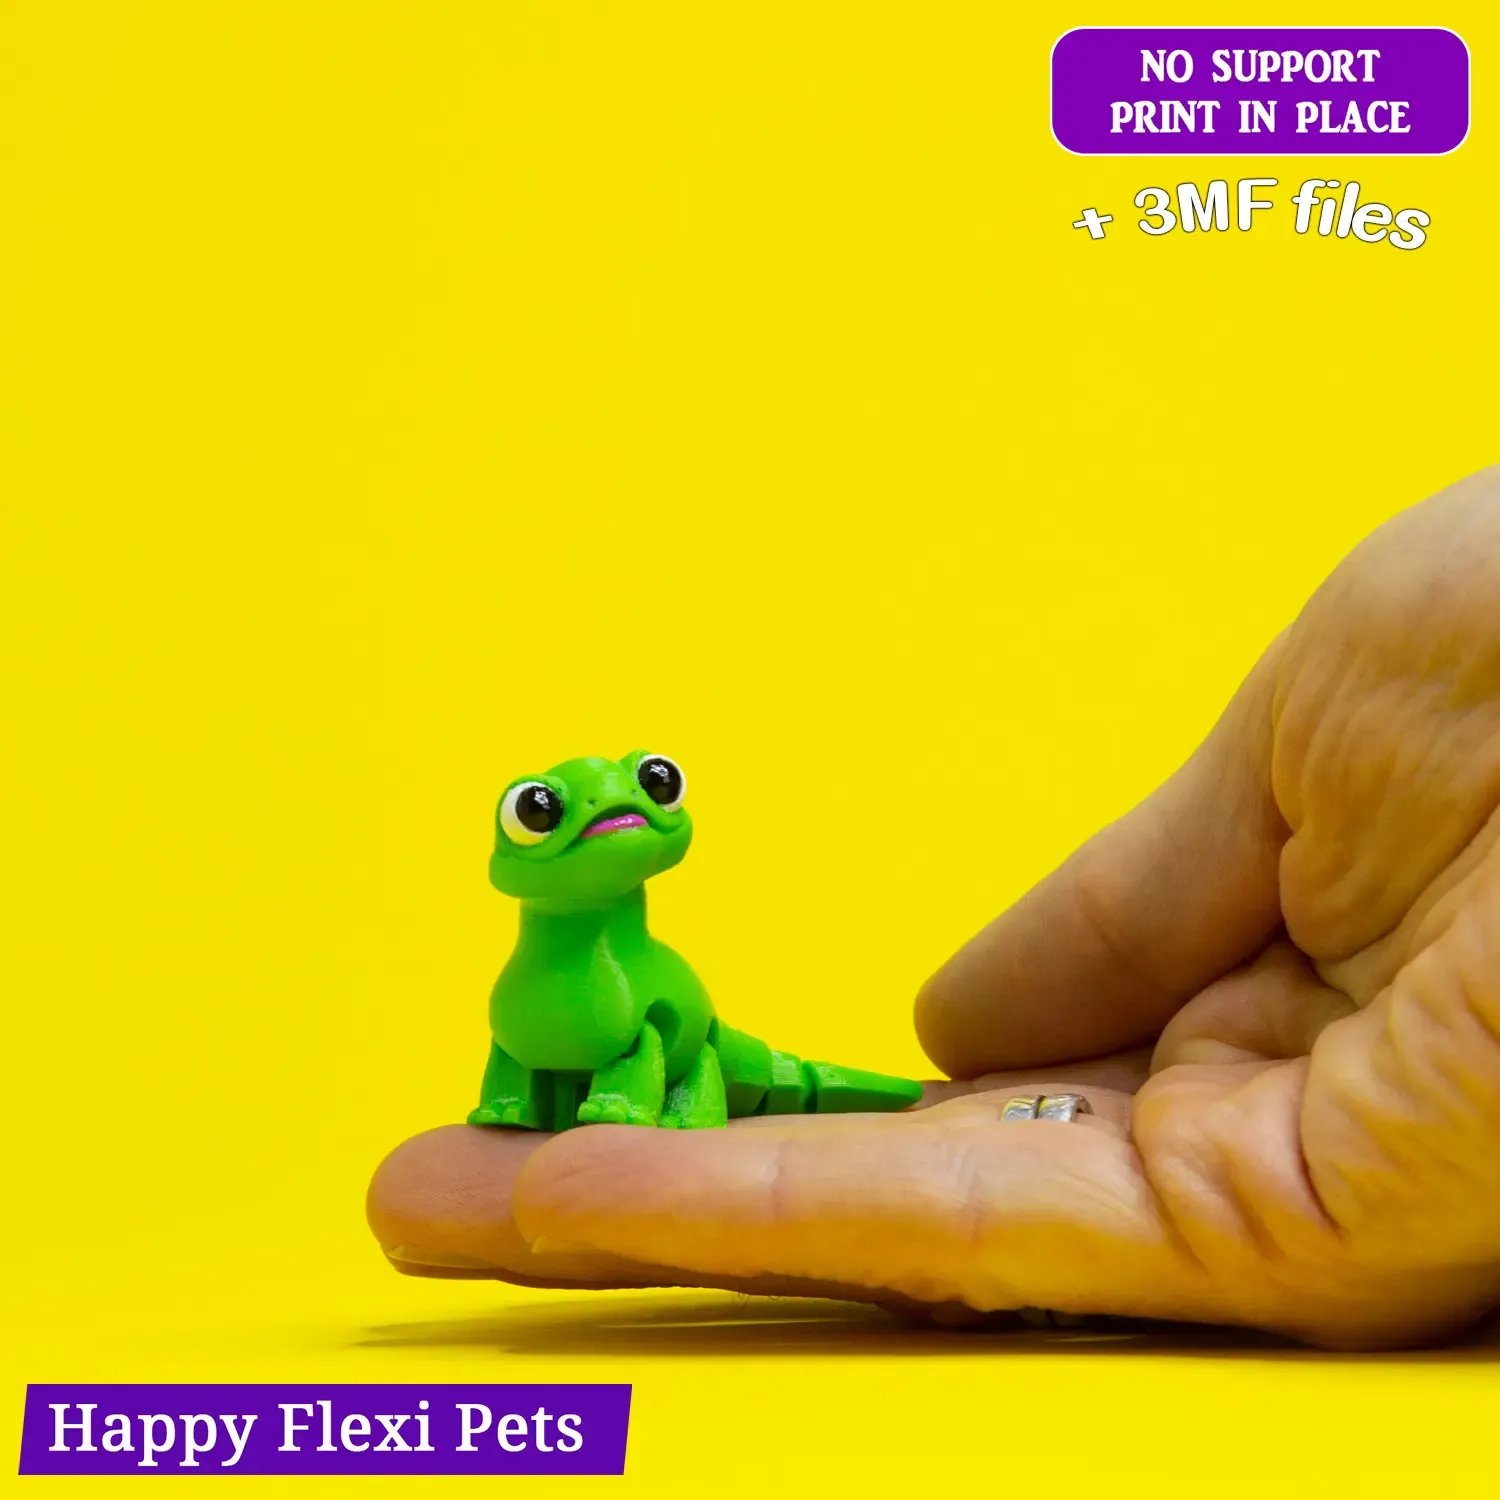 Cute Lizard articulated flexi toy